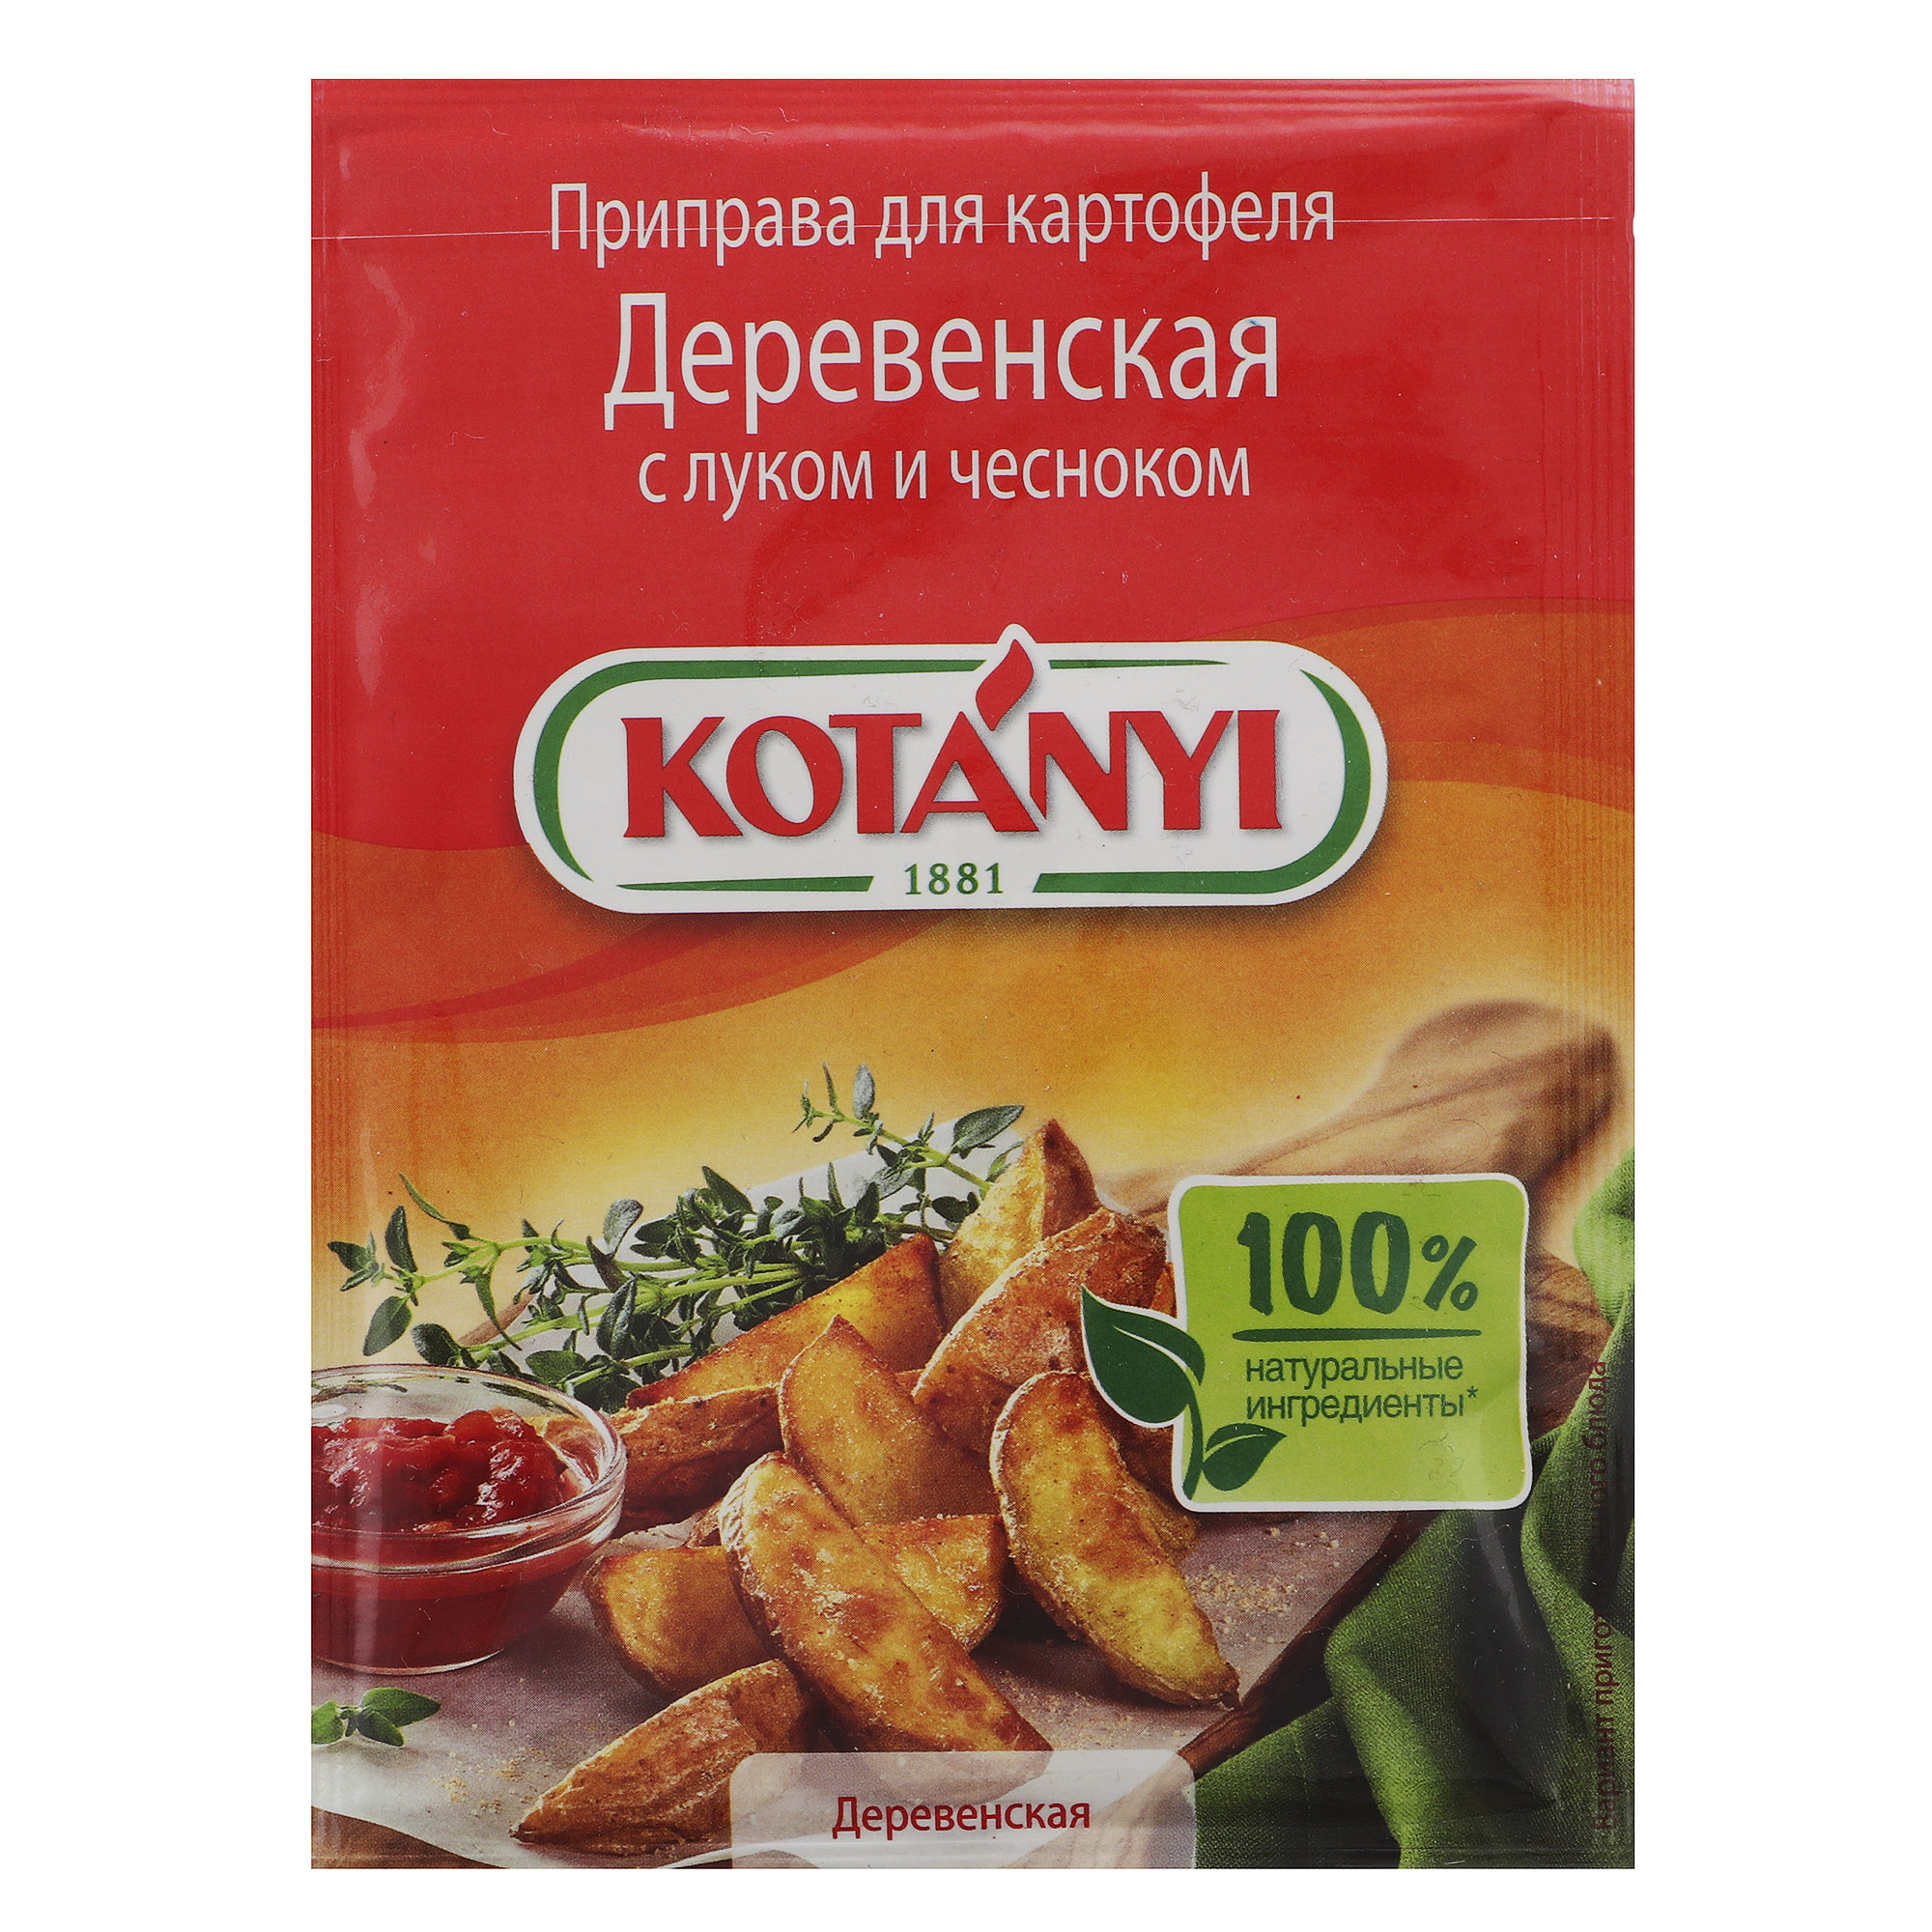 Приправа Kotanyi Деревенская для картофеля с луком и чесноком 20 г приправа для омлетов и яичницы kotanyi с томатами и травами 20 г